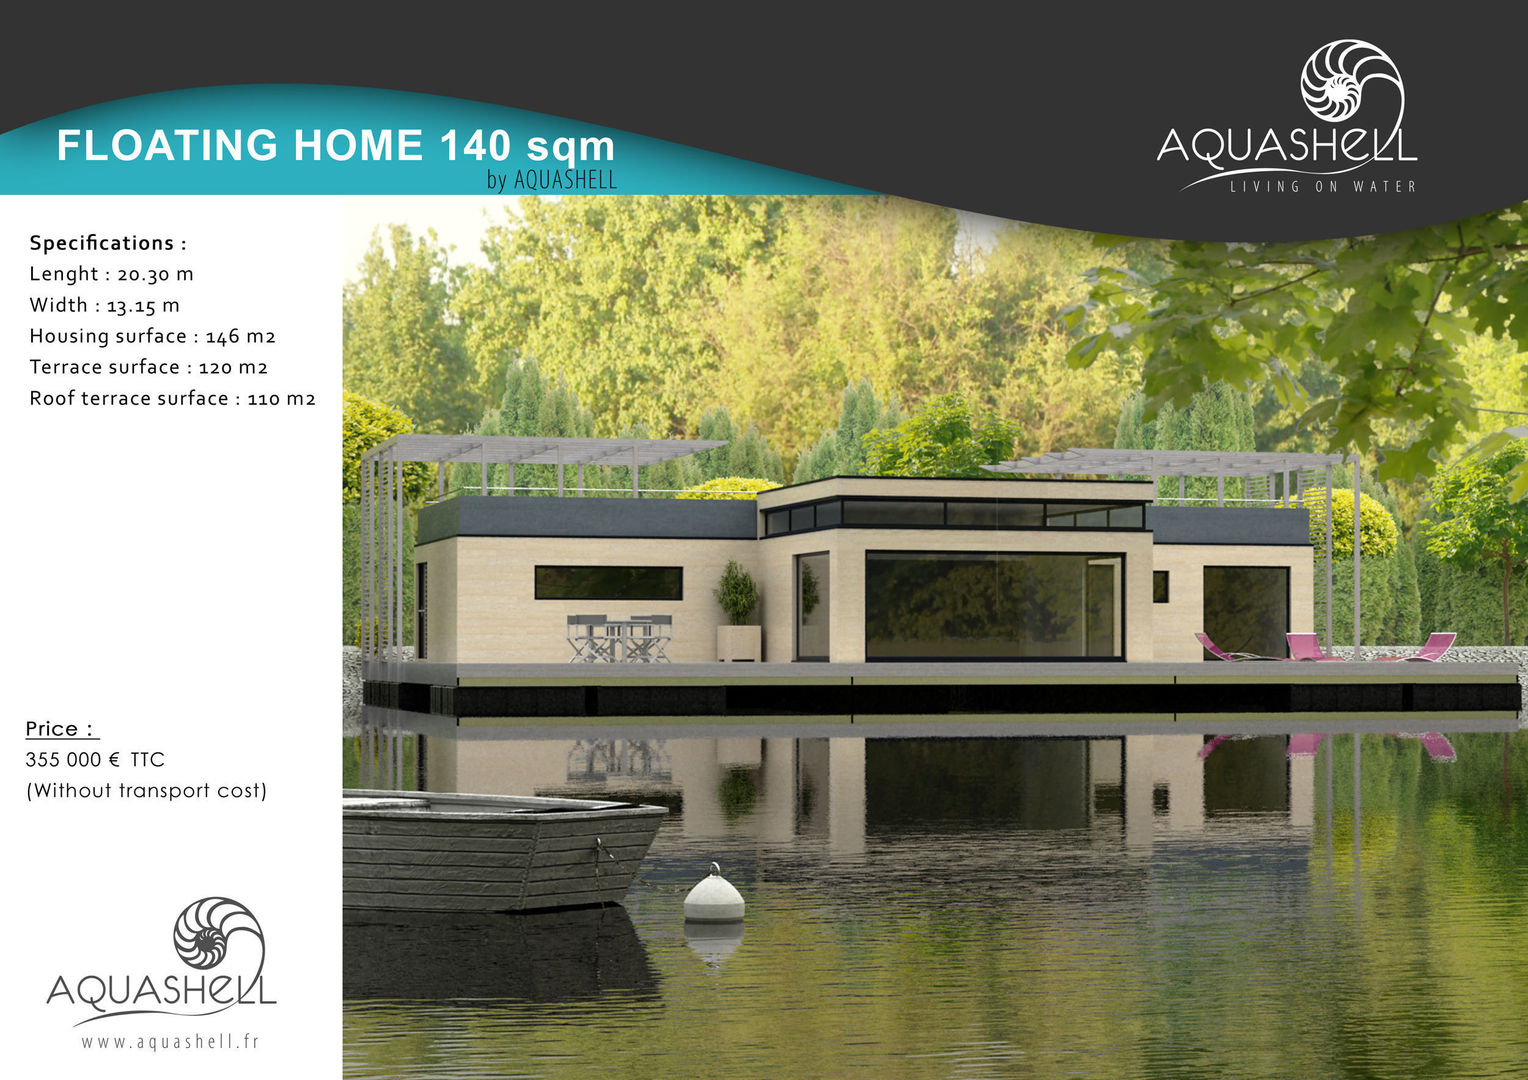 Aquashell 140 sq mtr Home design Floating Habitats T/A AQUASHELL 모던스타일 주택